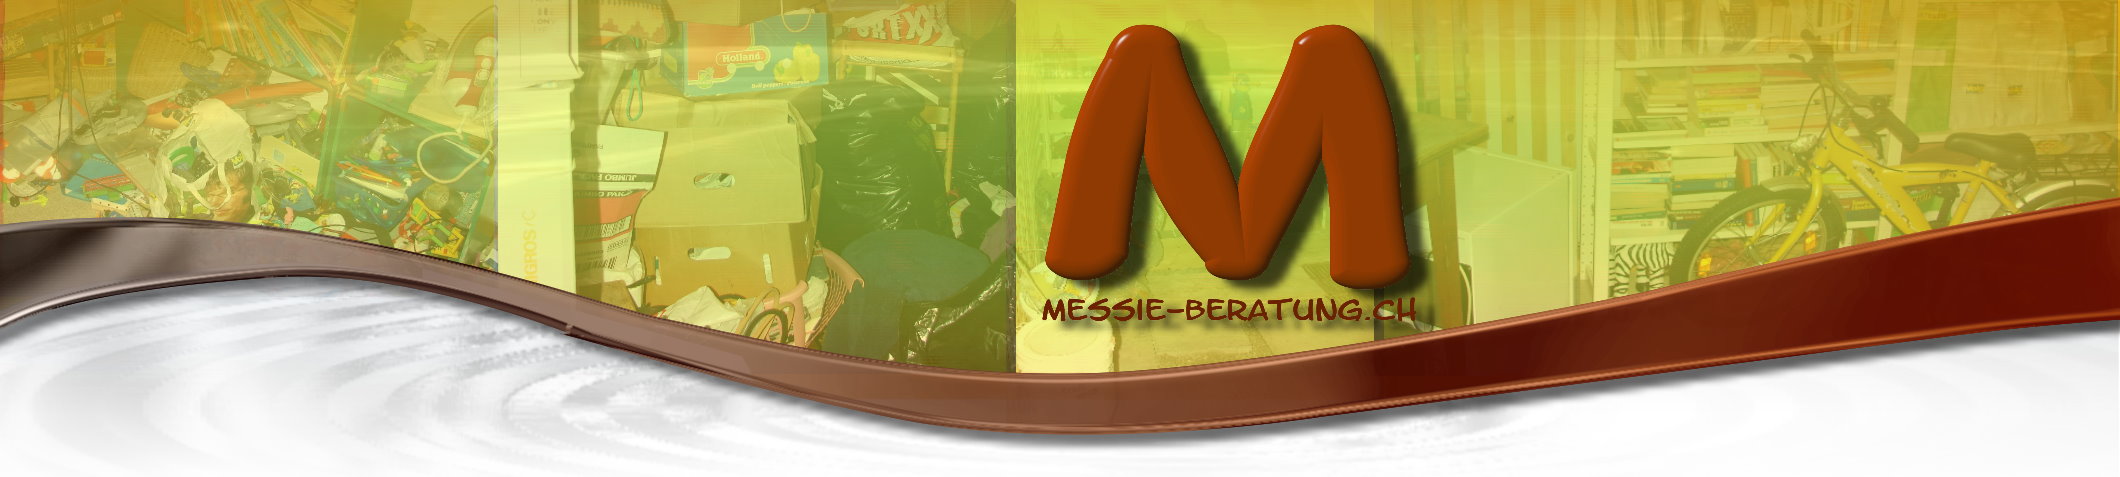 Messie-Beratung-Banner